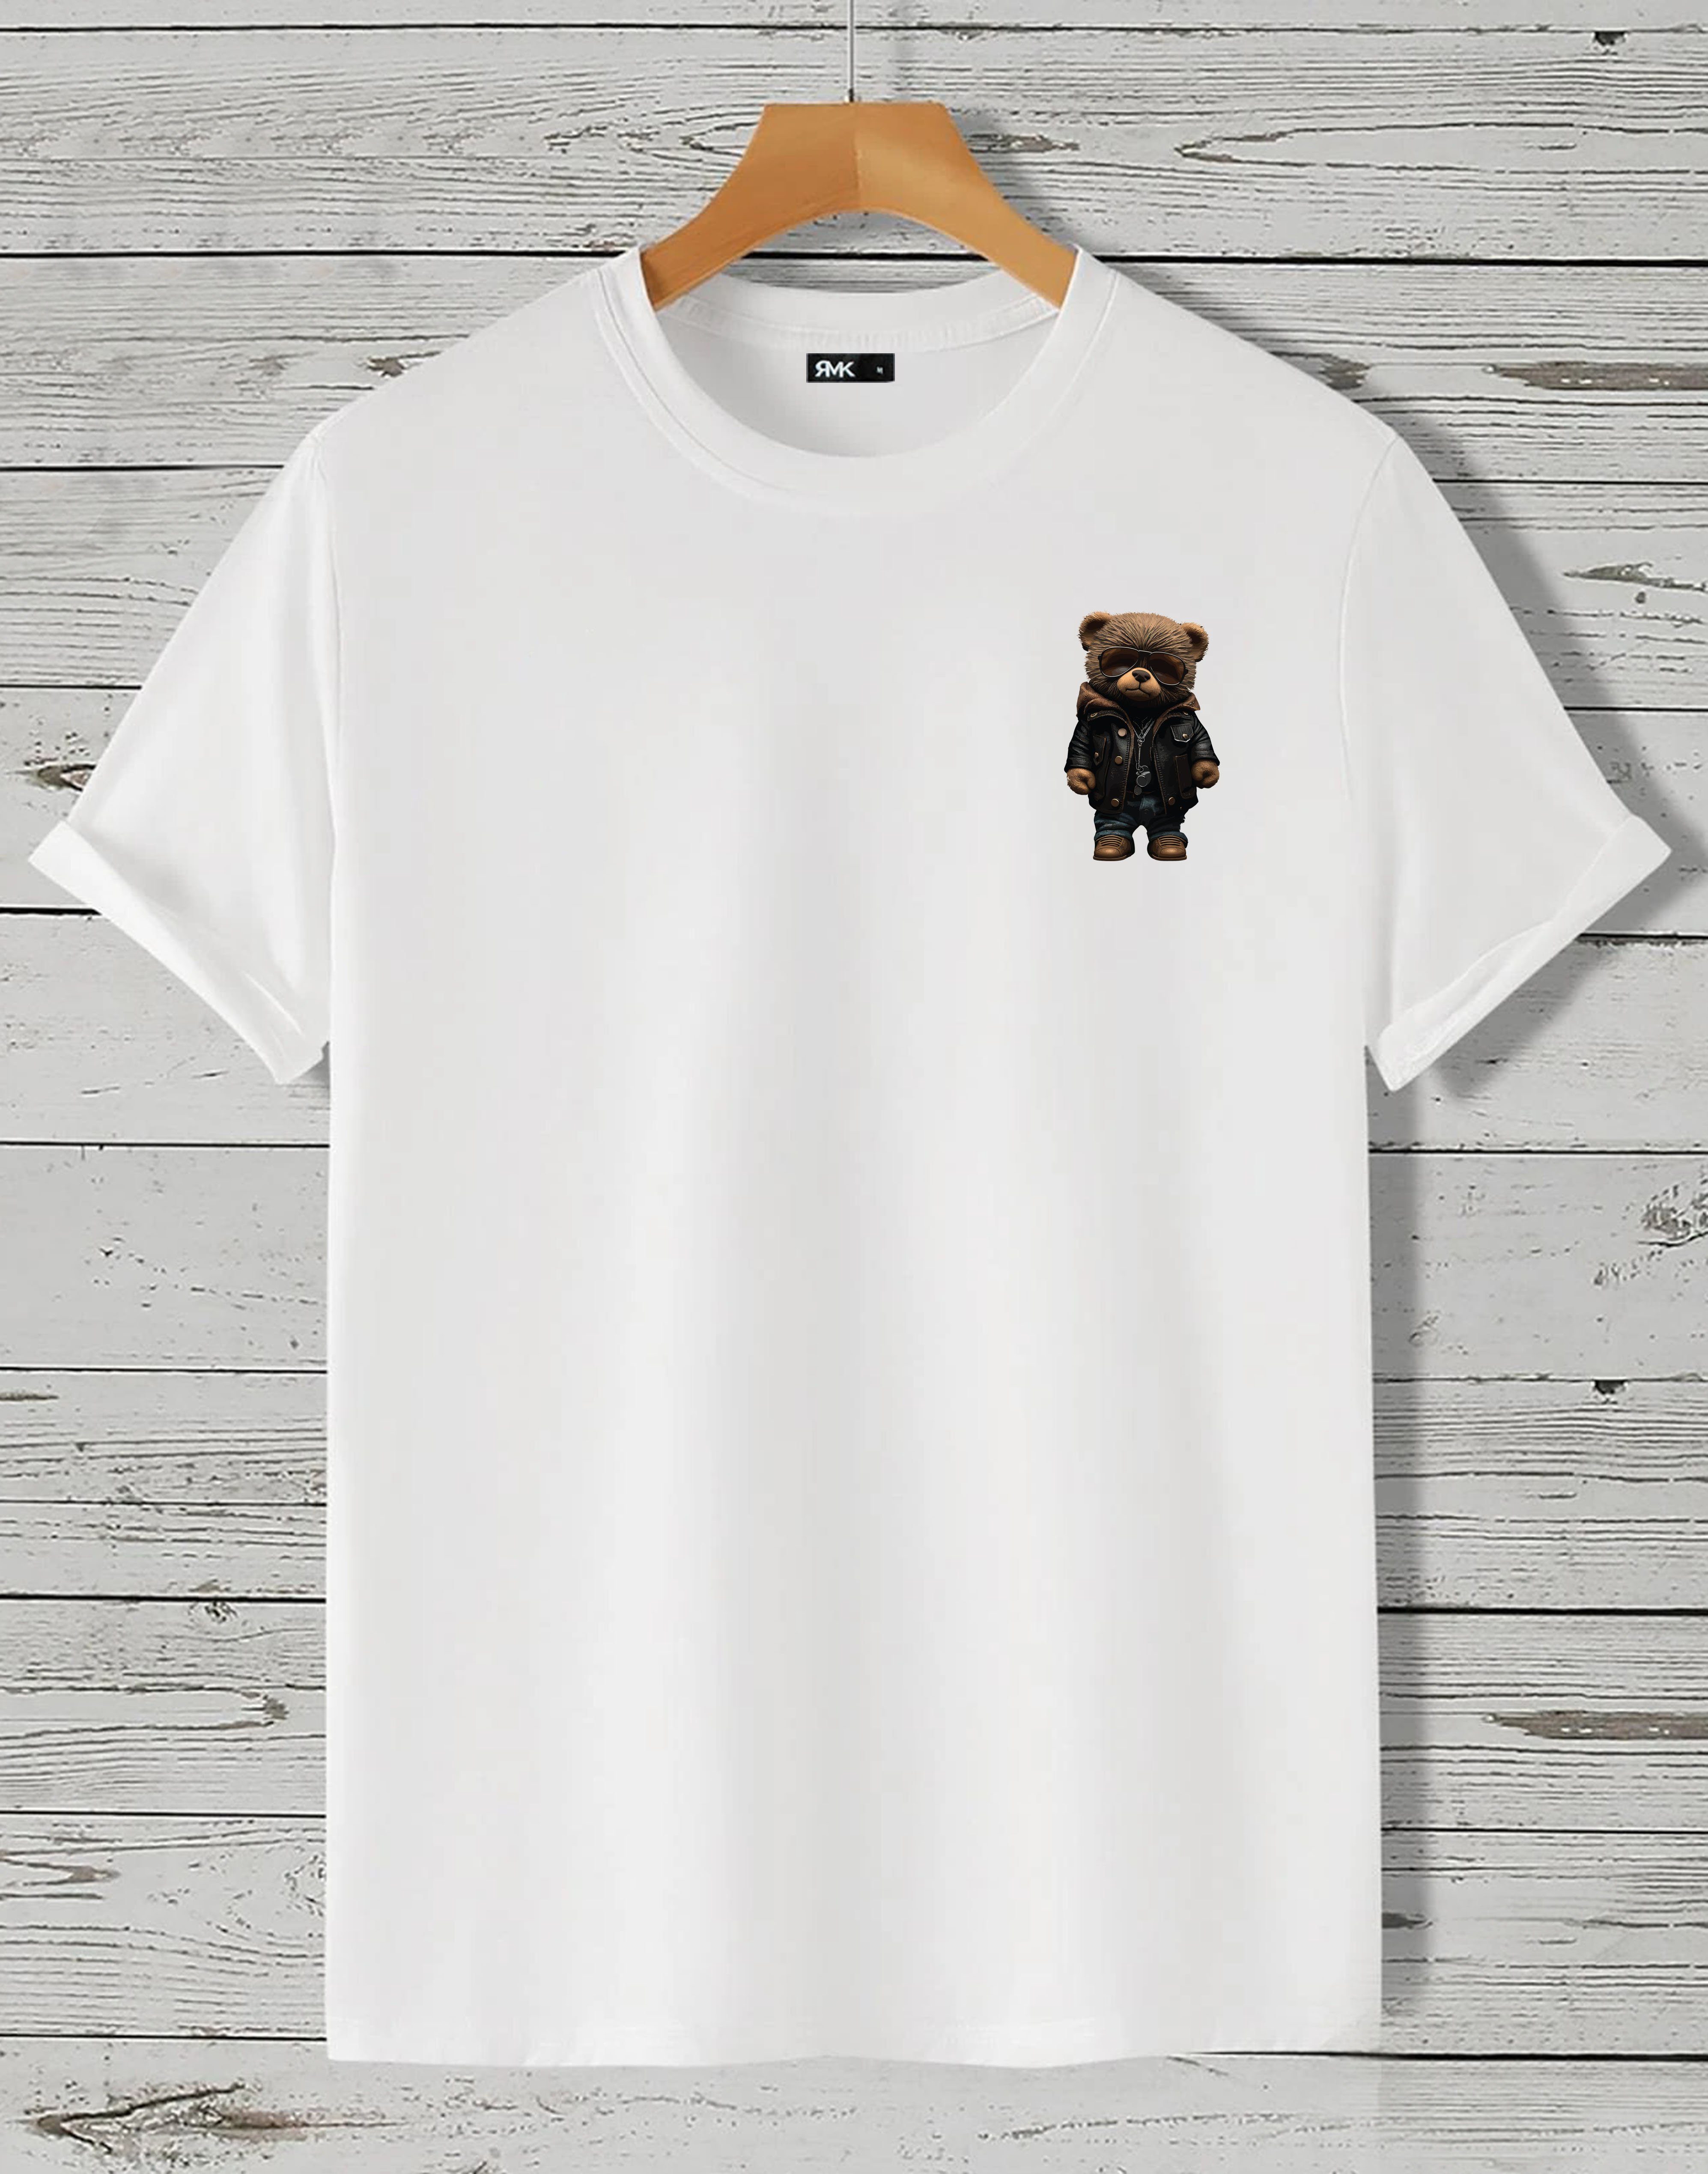 RMK T-Shirt Herren Shirt Rundhals Basic Druck (Teddybär Sonnenbrille Lederjacke) in Unifarbe, mit lizenziertem Print, aus Baumwolle Weiß (klein)